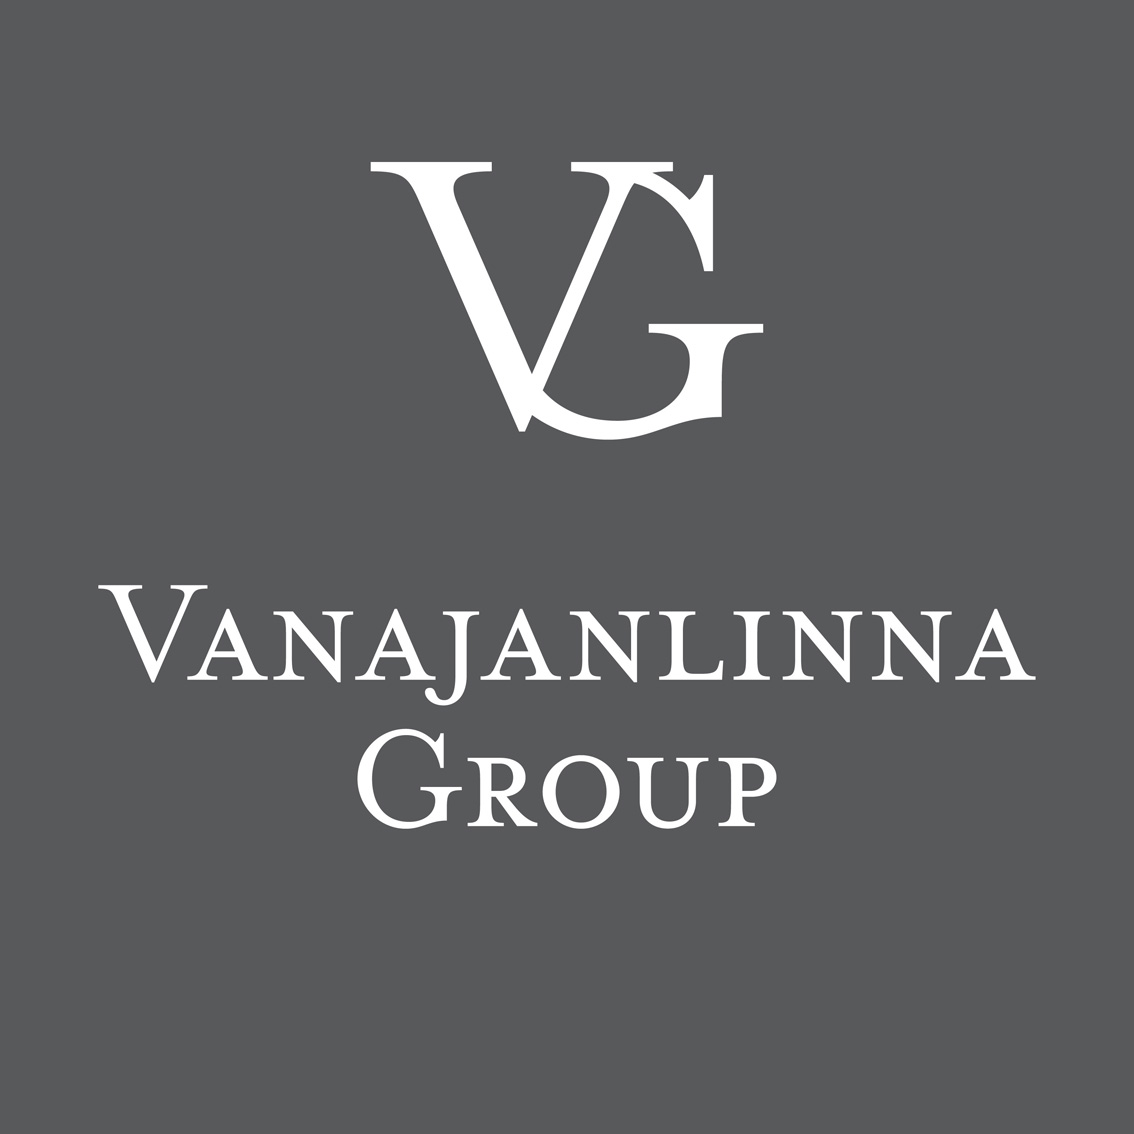 Vanajanlinna_Group_logo_neg144dpi